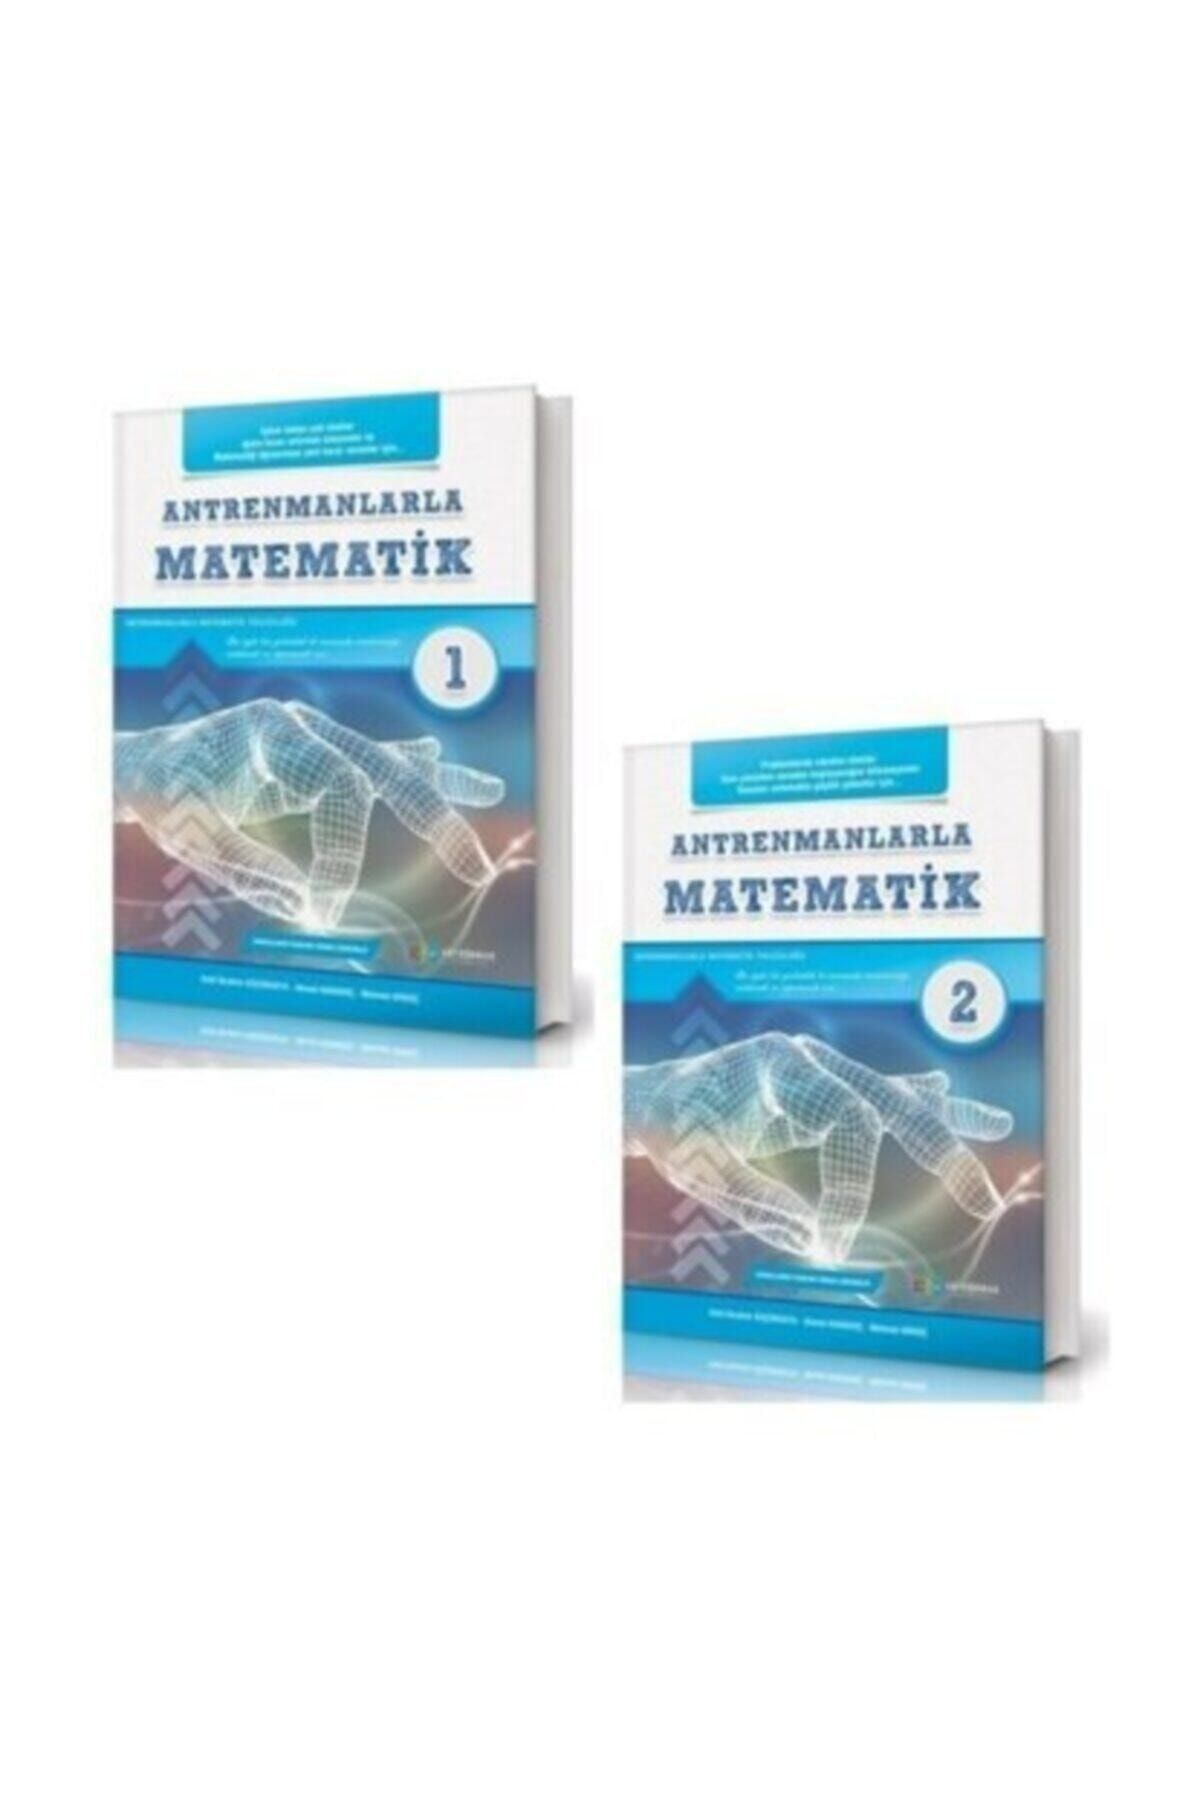 Antrenman Yayınları Antremanlarla Matematik 1 Ve 2